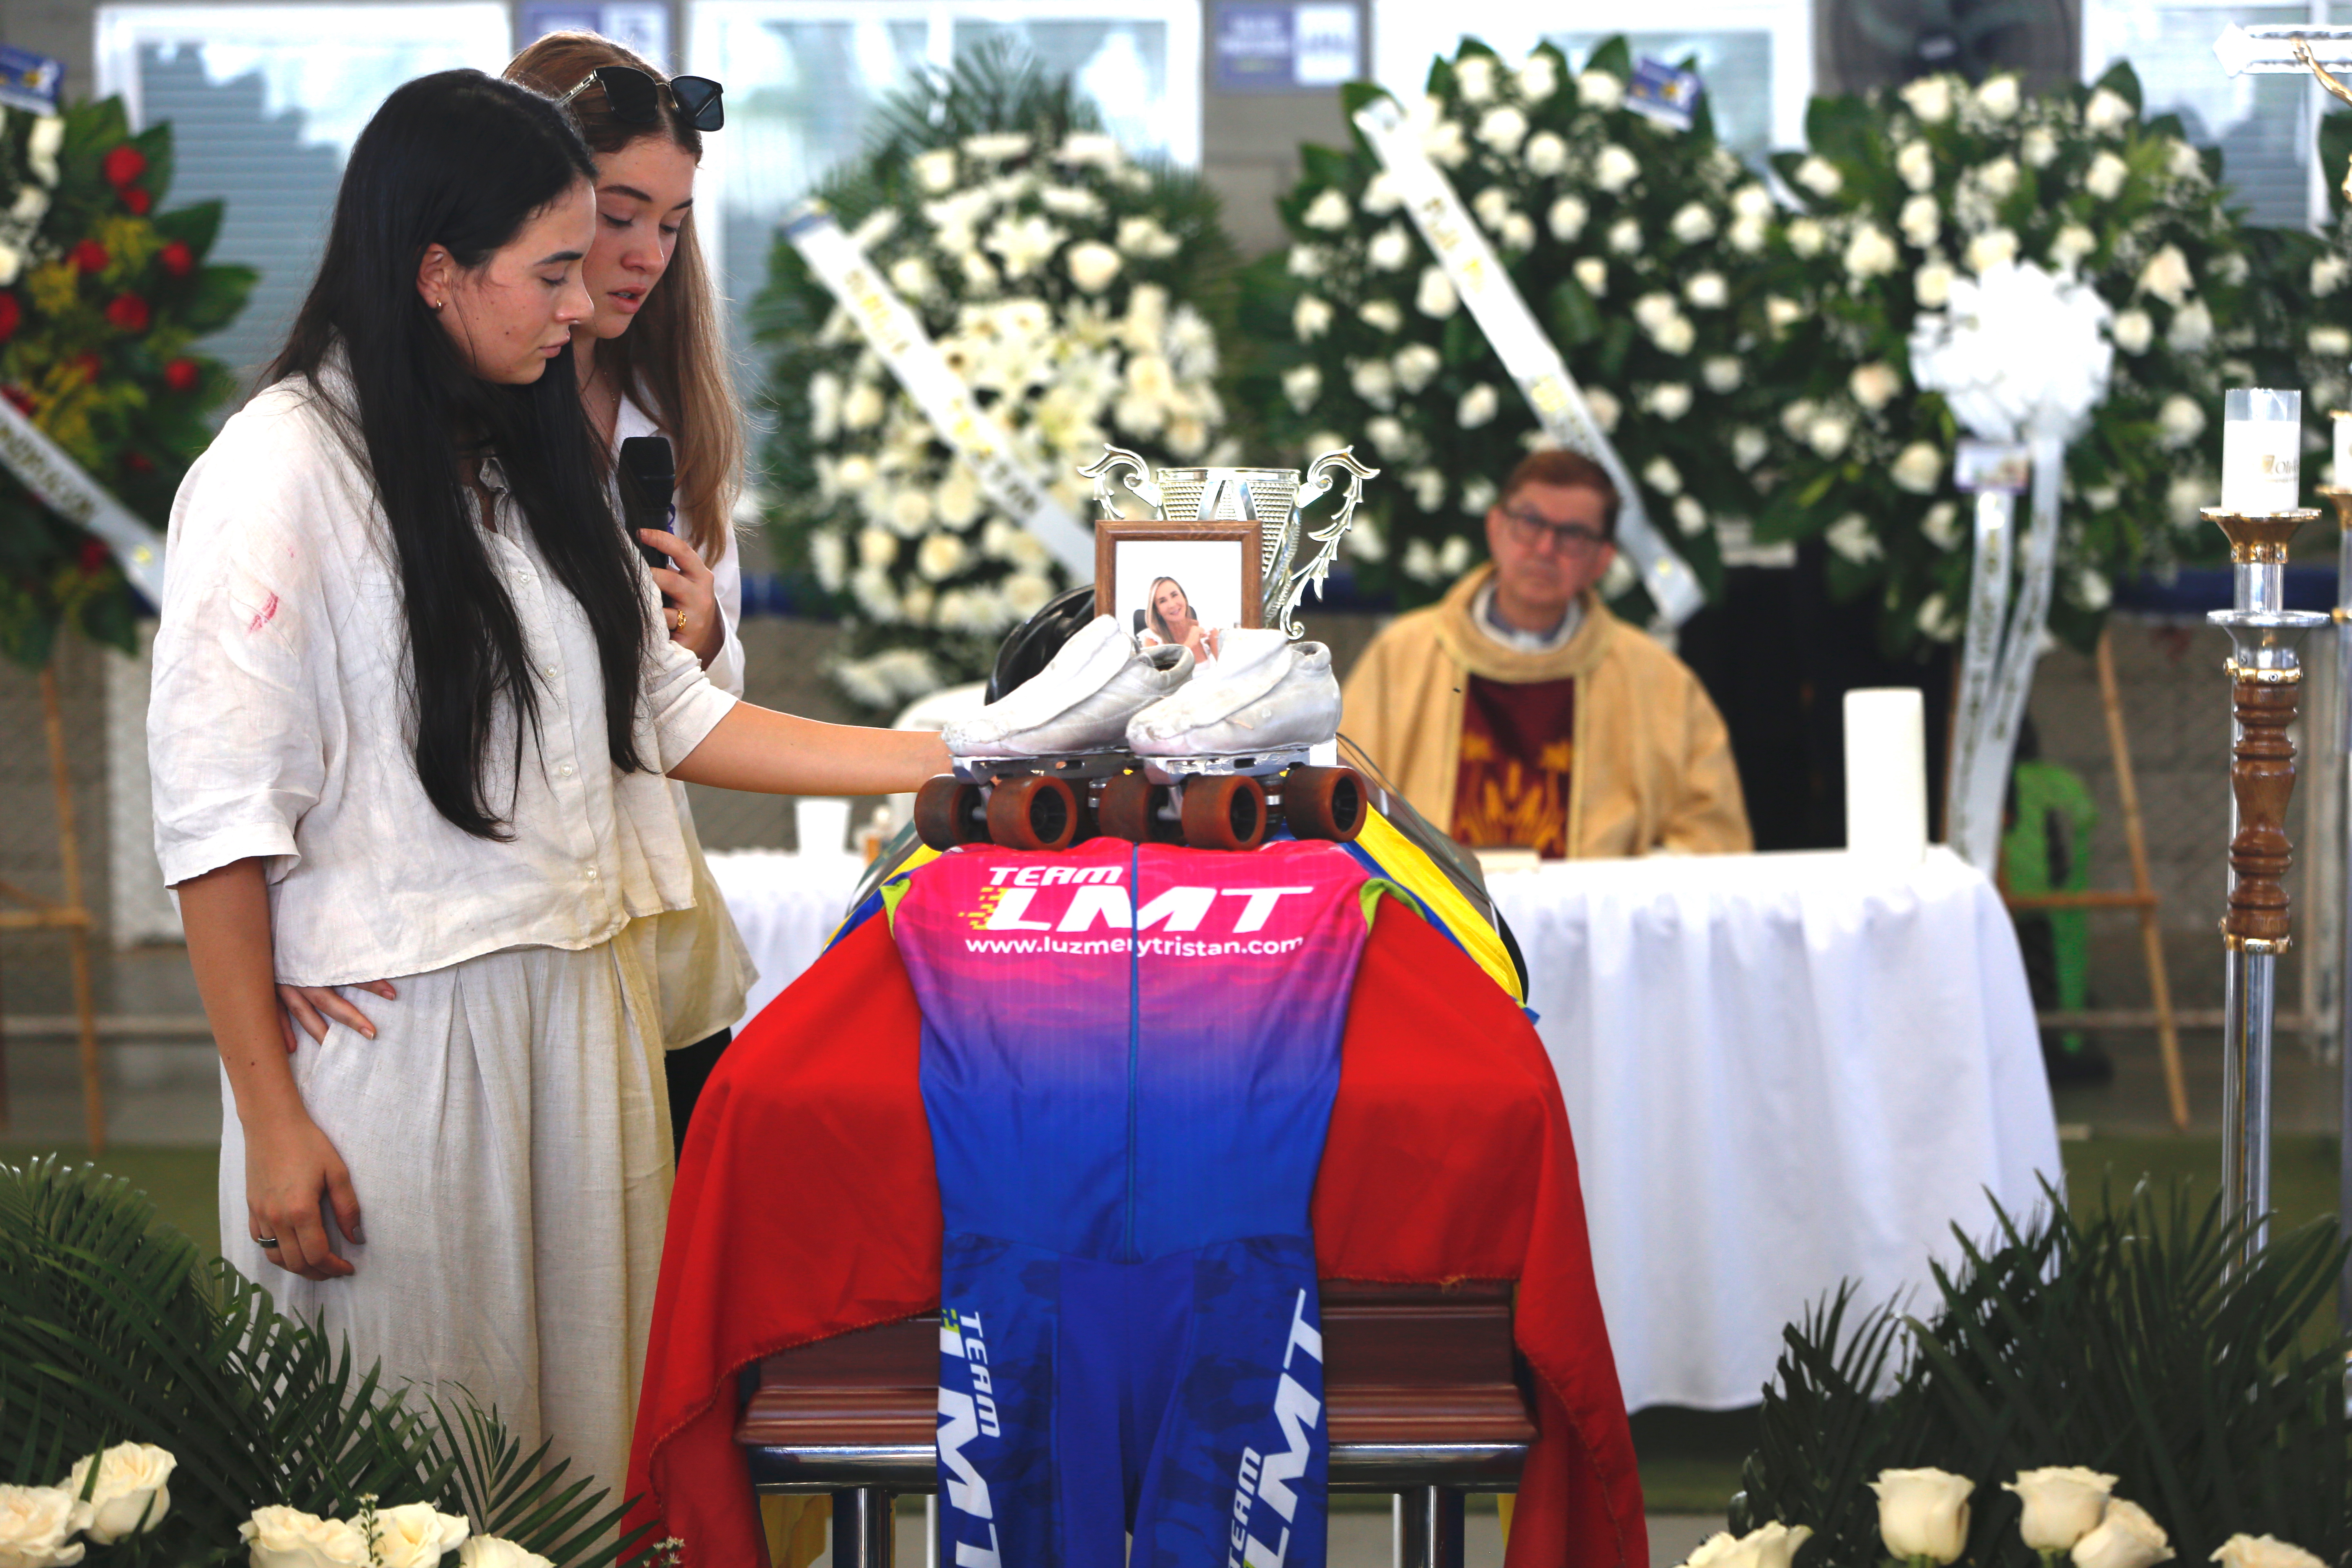 Verwandte und Freunde trauern um den ehemaligen kolumbianischen Eiskunstläufer Luz Mery Tristan in Cali, Kolumbien